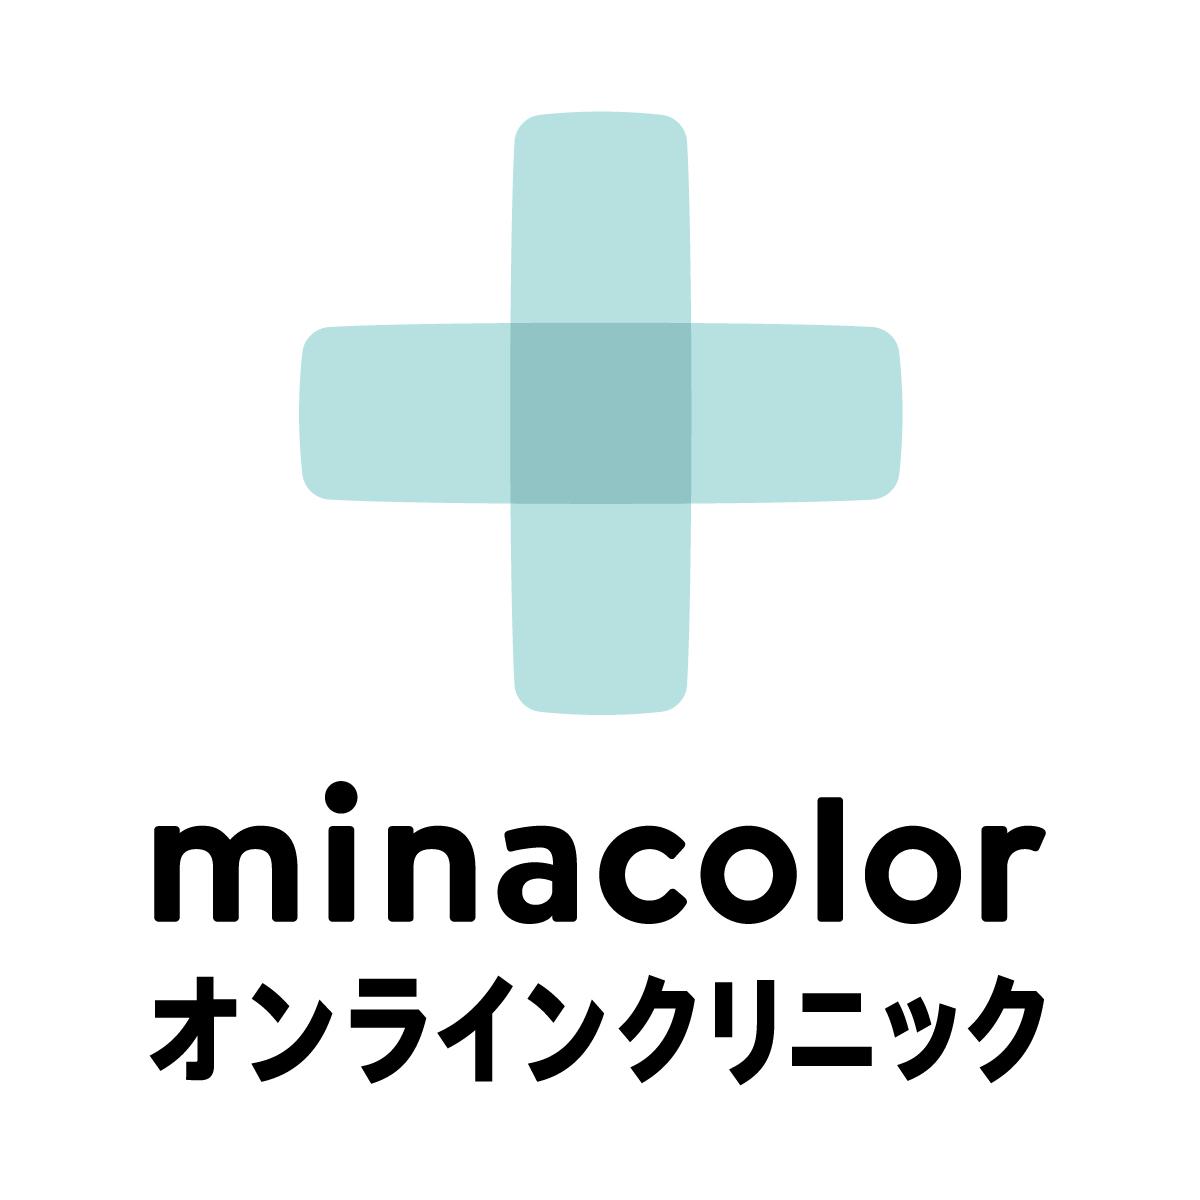 ミナカラクリニックのロゴ画像